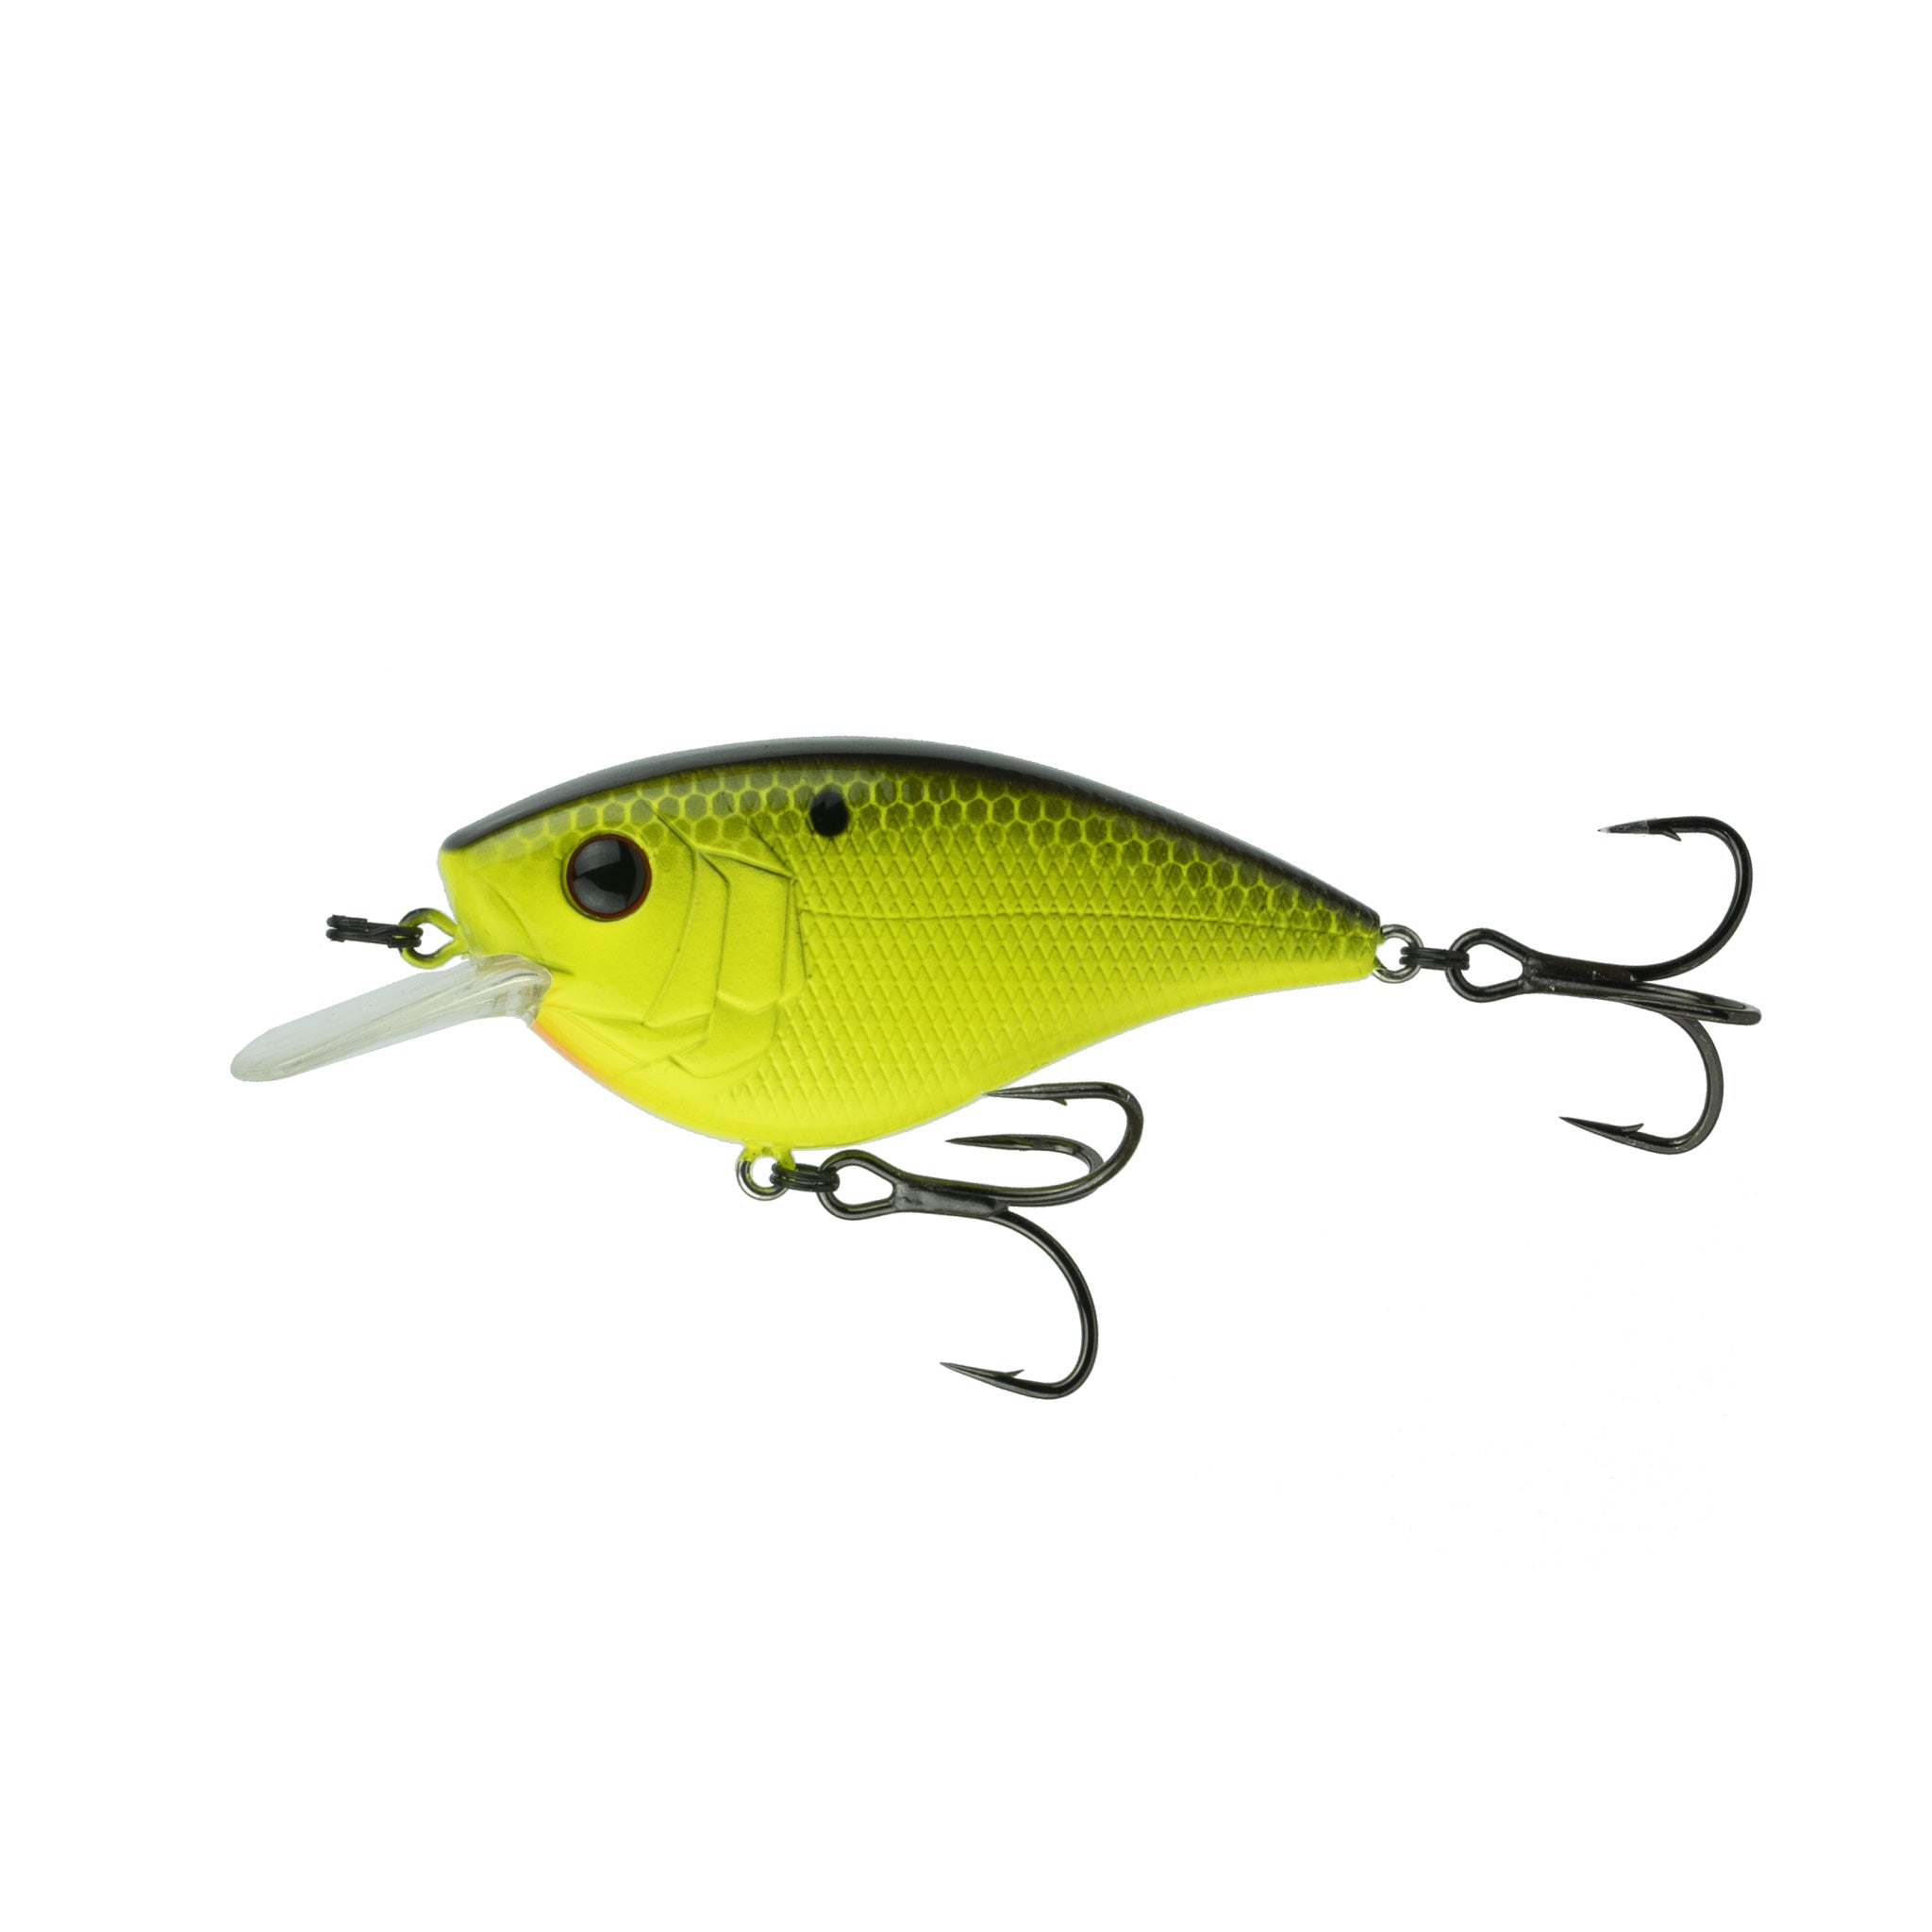 6th Sense Fishing - Crush Flat 75X Squarebill Crankbait - Chartreuse Black  Back